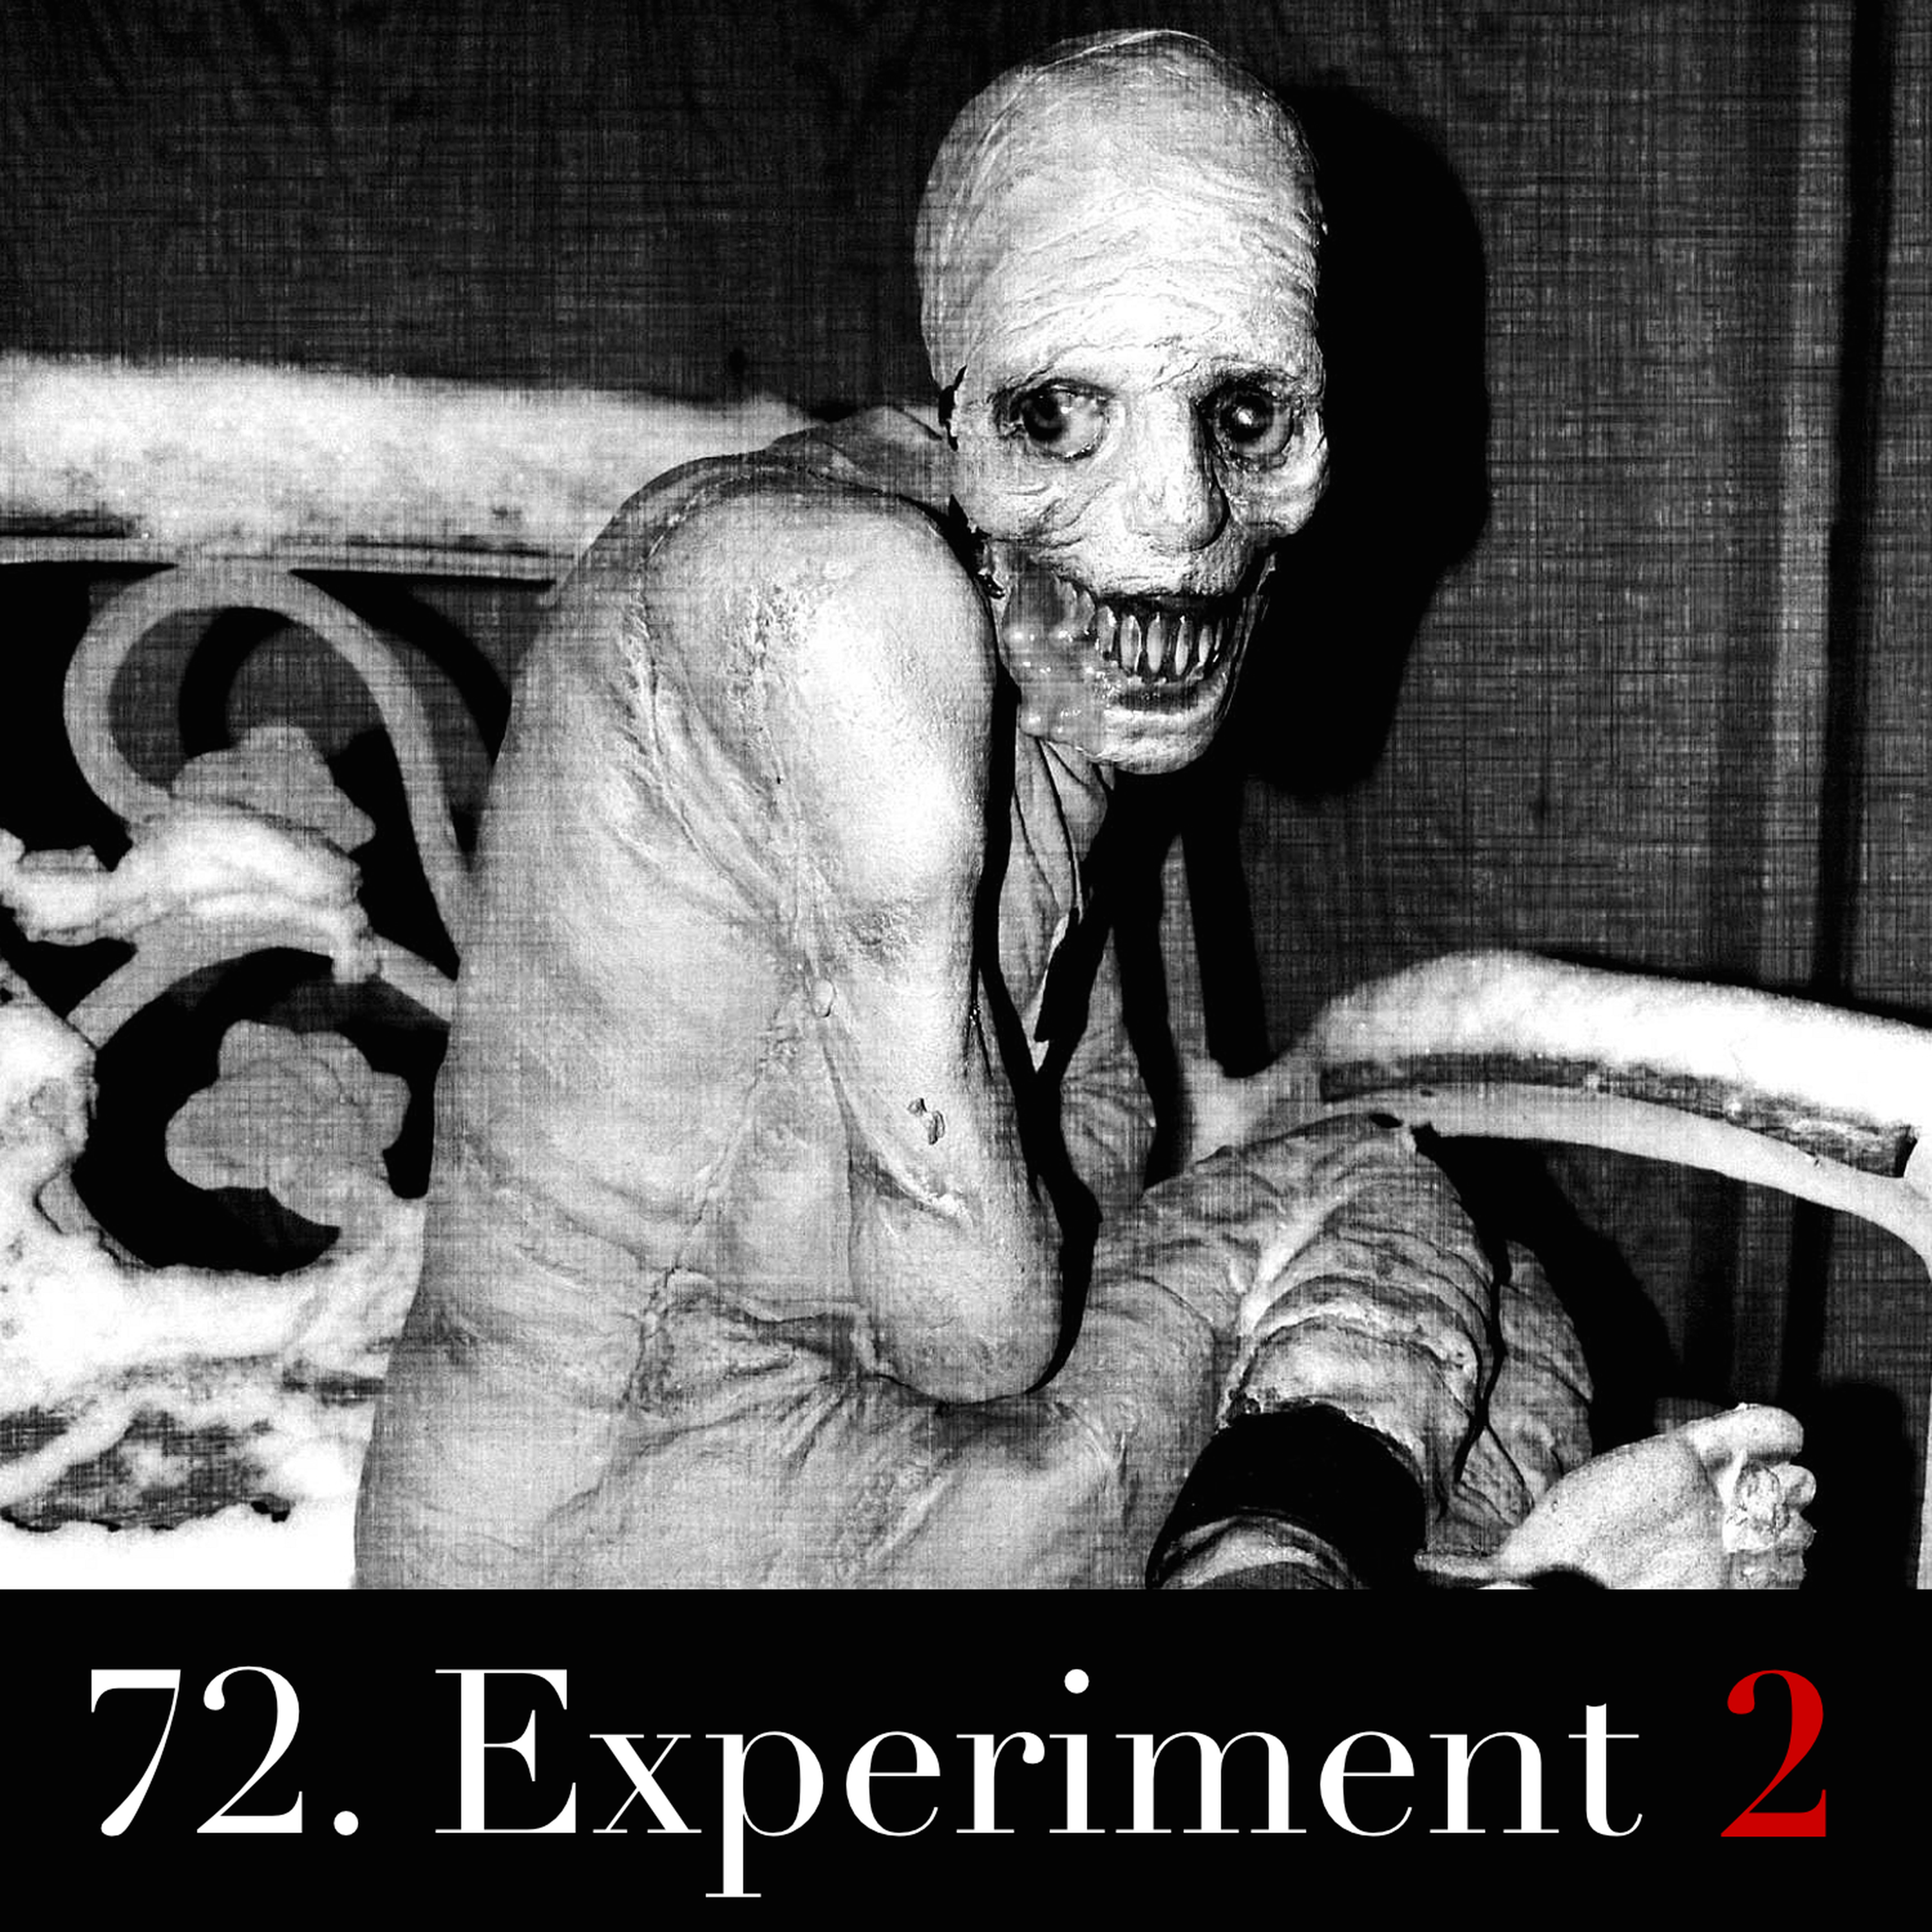 72. Experiment 2